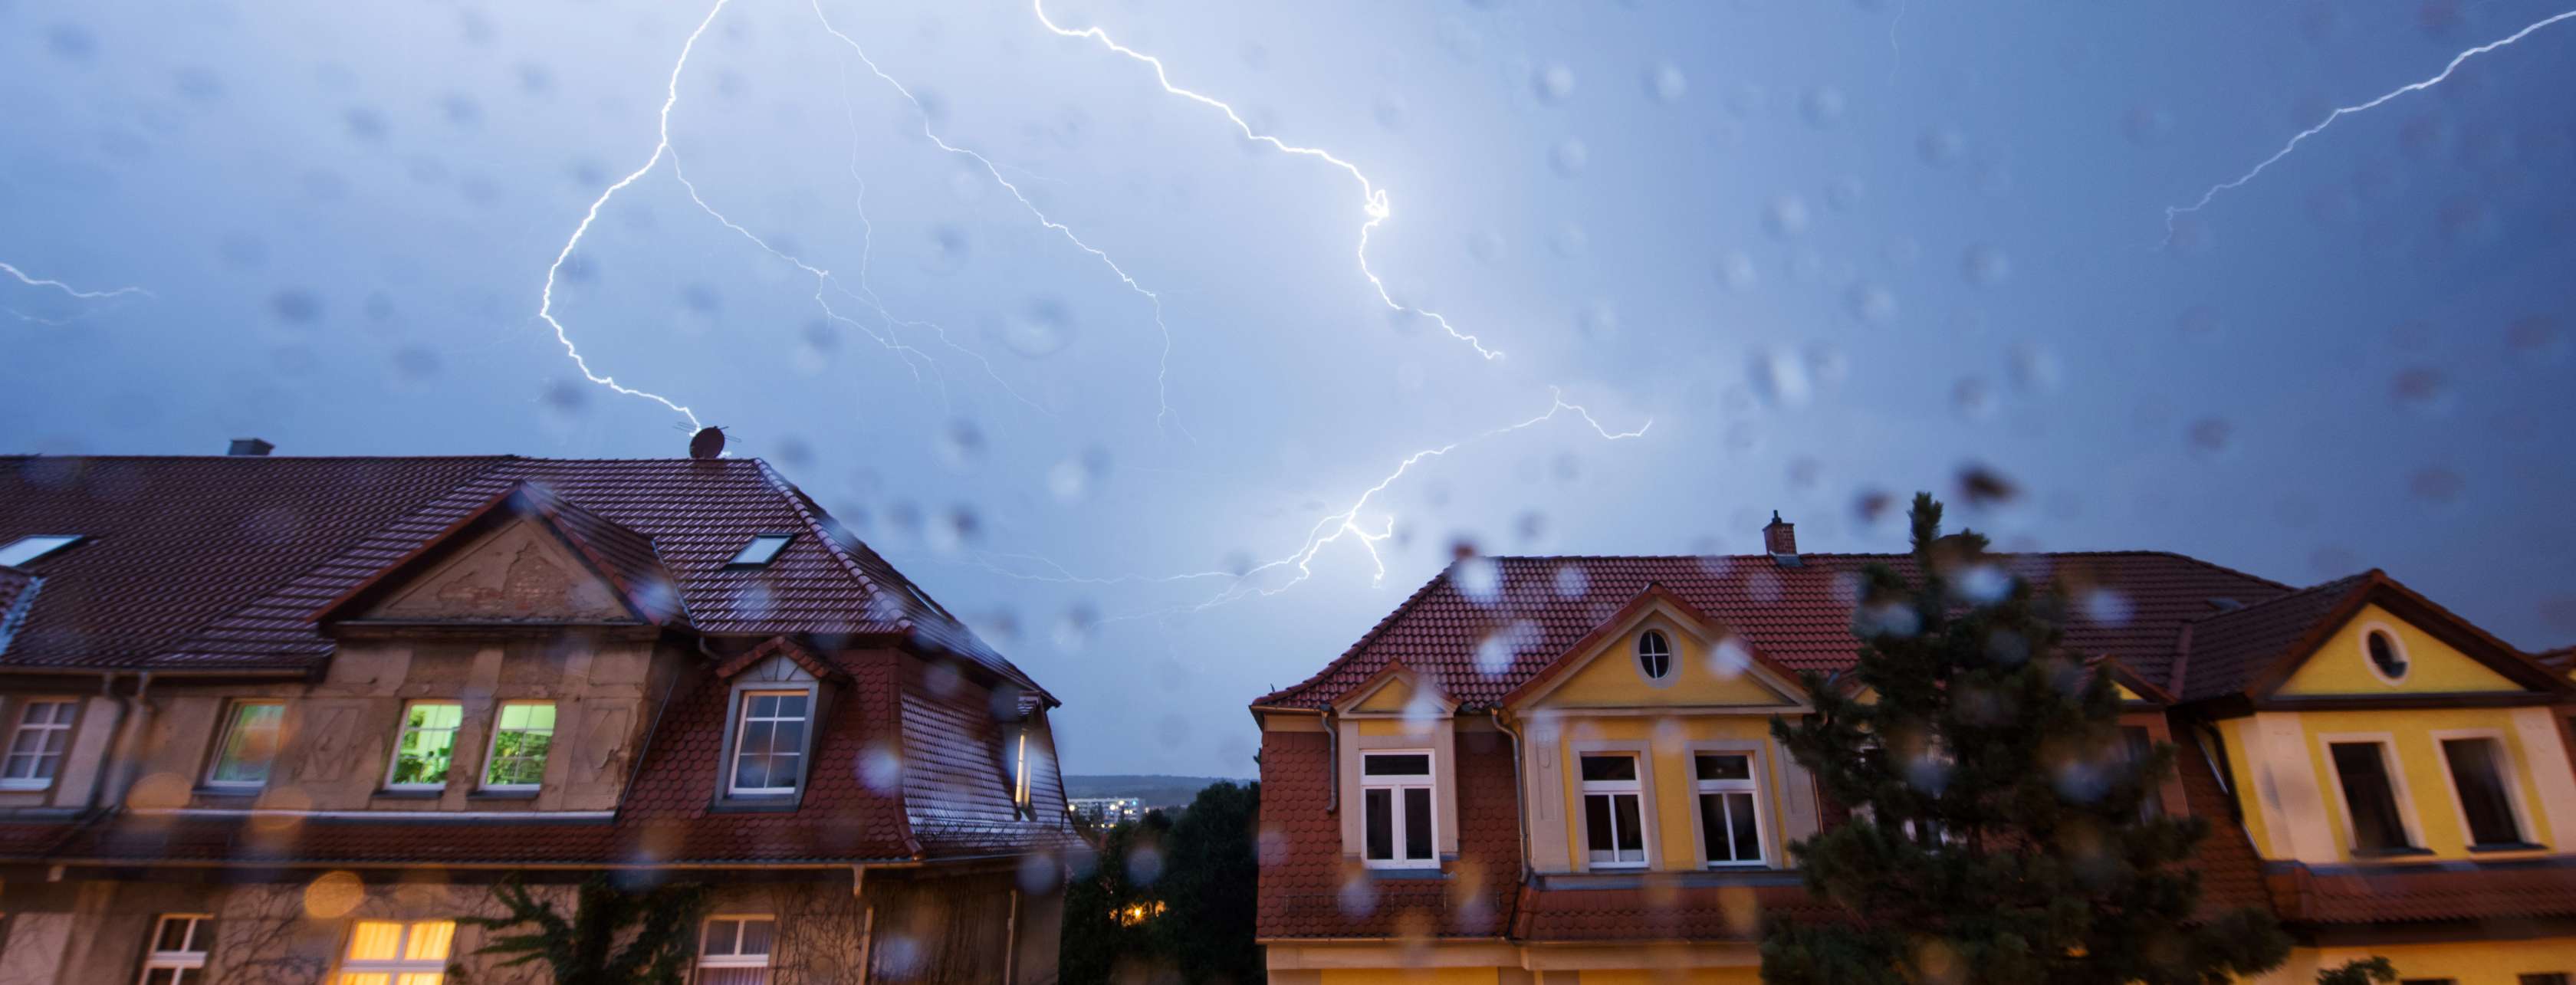 Vor Blitzeinschlag schützen: Blitze am Himmel über zwei Häusern